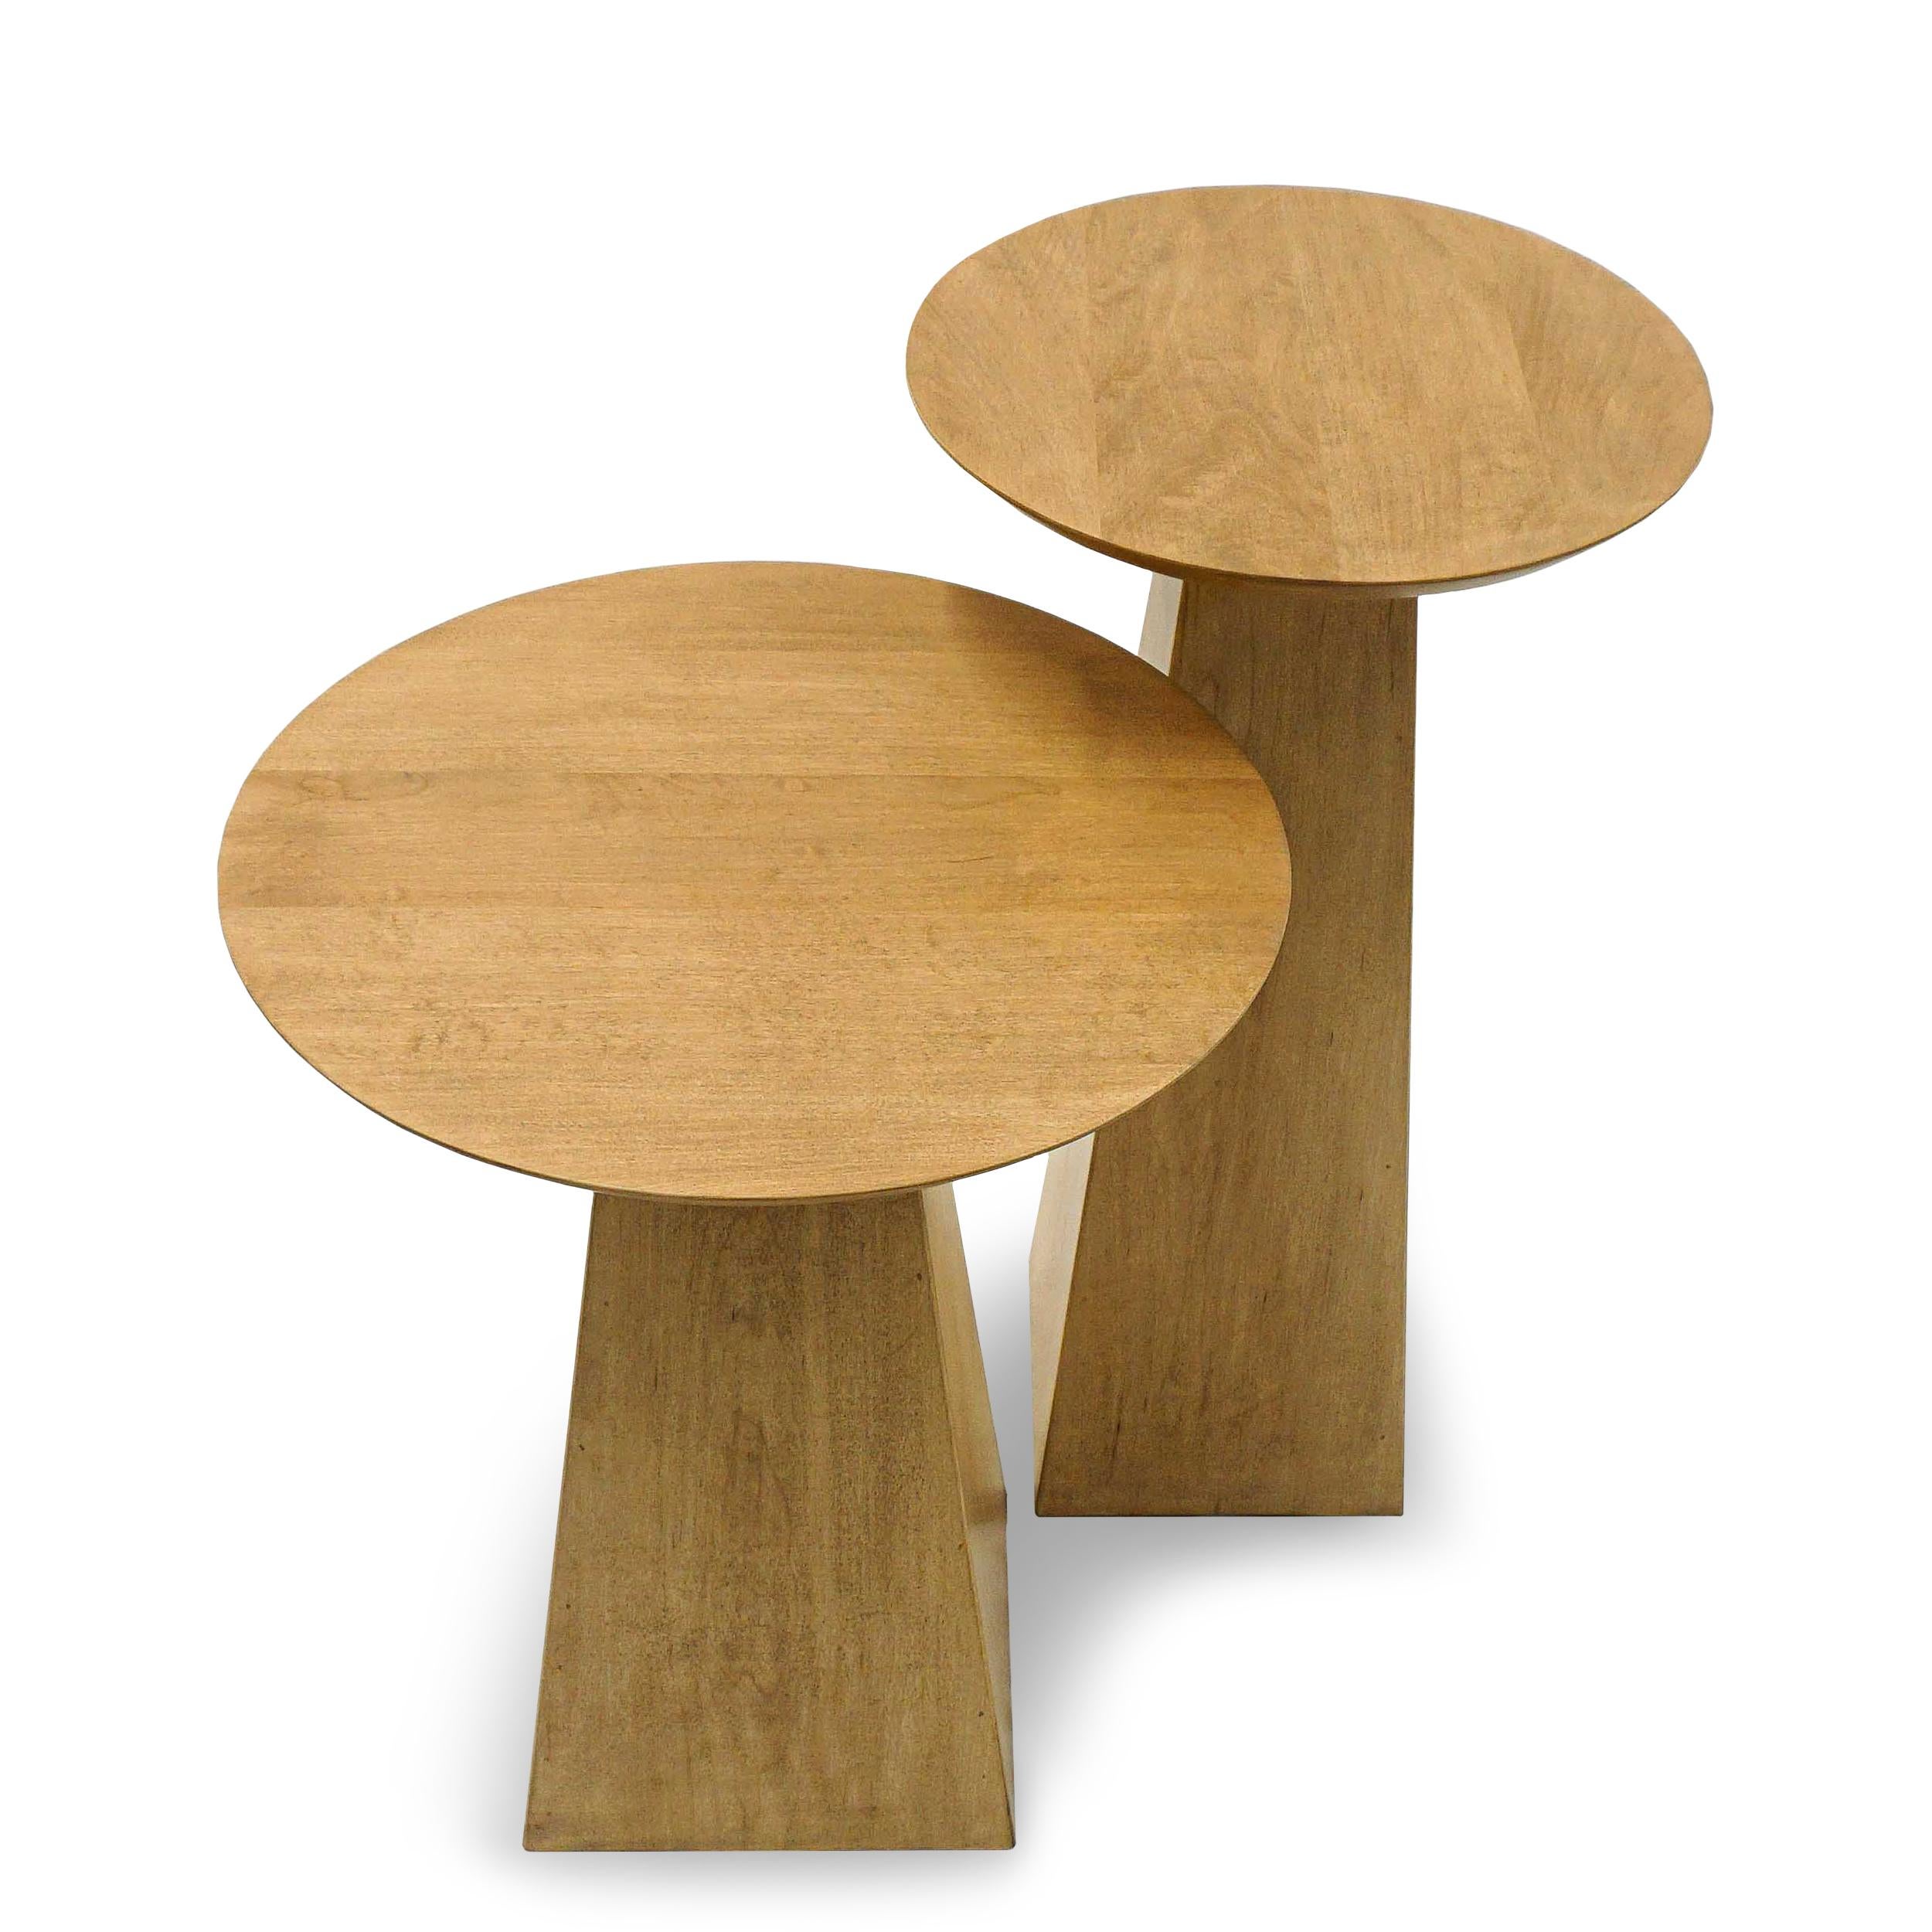 Ensemble de tables d'appoint géométriques en érable dur massif. Montré dans une teinture de finition naturelle. Personnalisable en taille et en finition de bois. Renseignez-vous sur les possibilités d'achat à l'unité ou en d'autres quantités.